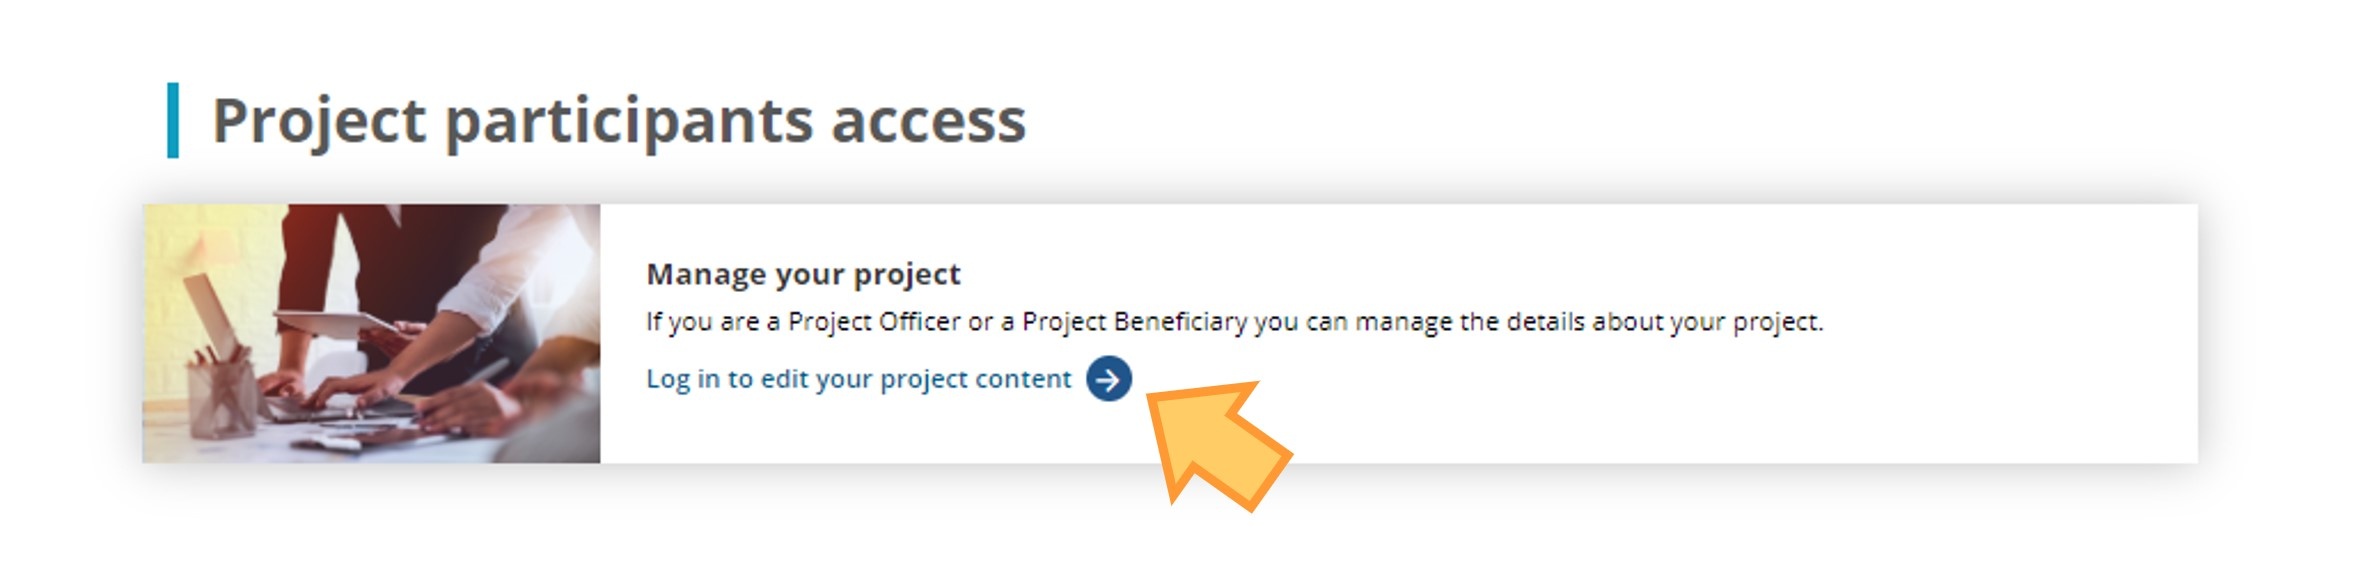 Project participant access